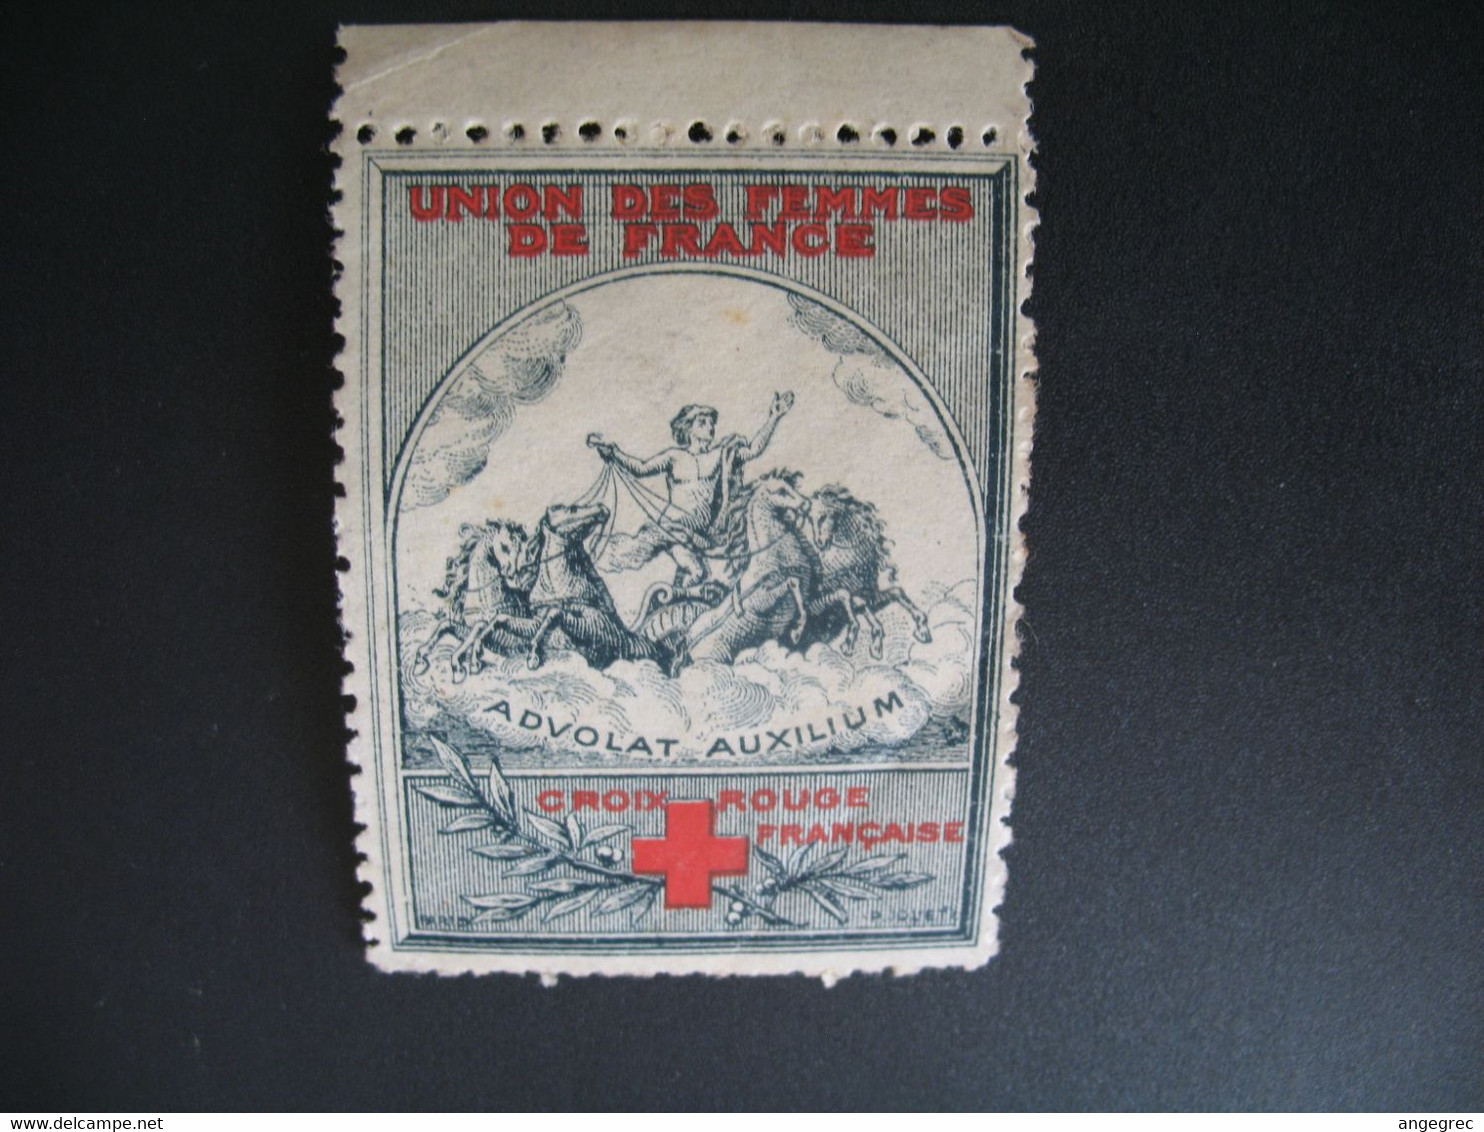 Vignette Militaire Delandre Guerre De 1914 - Croix Rouge - Red Cross - Croix Rouge Française   Advolat Auxilium - Rode Kruis